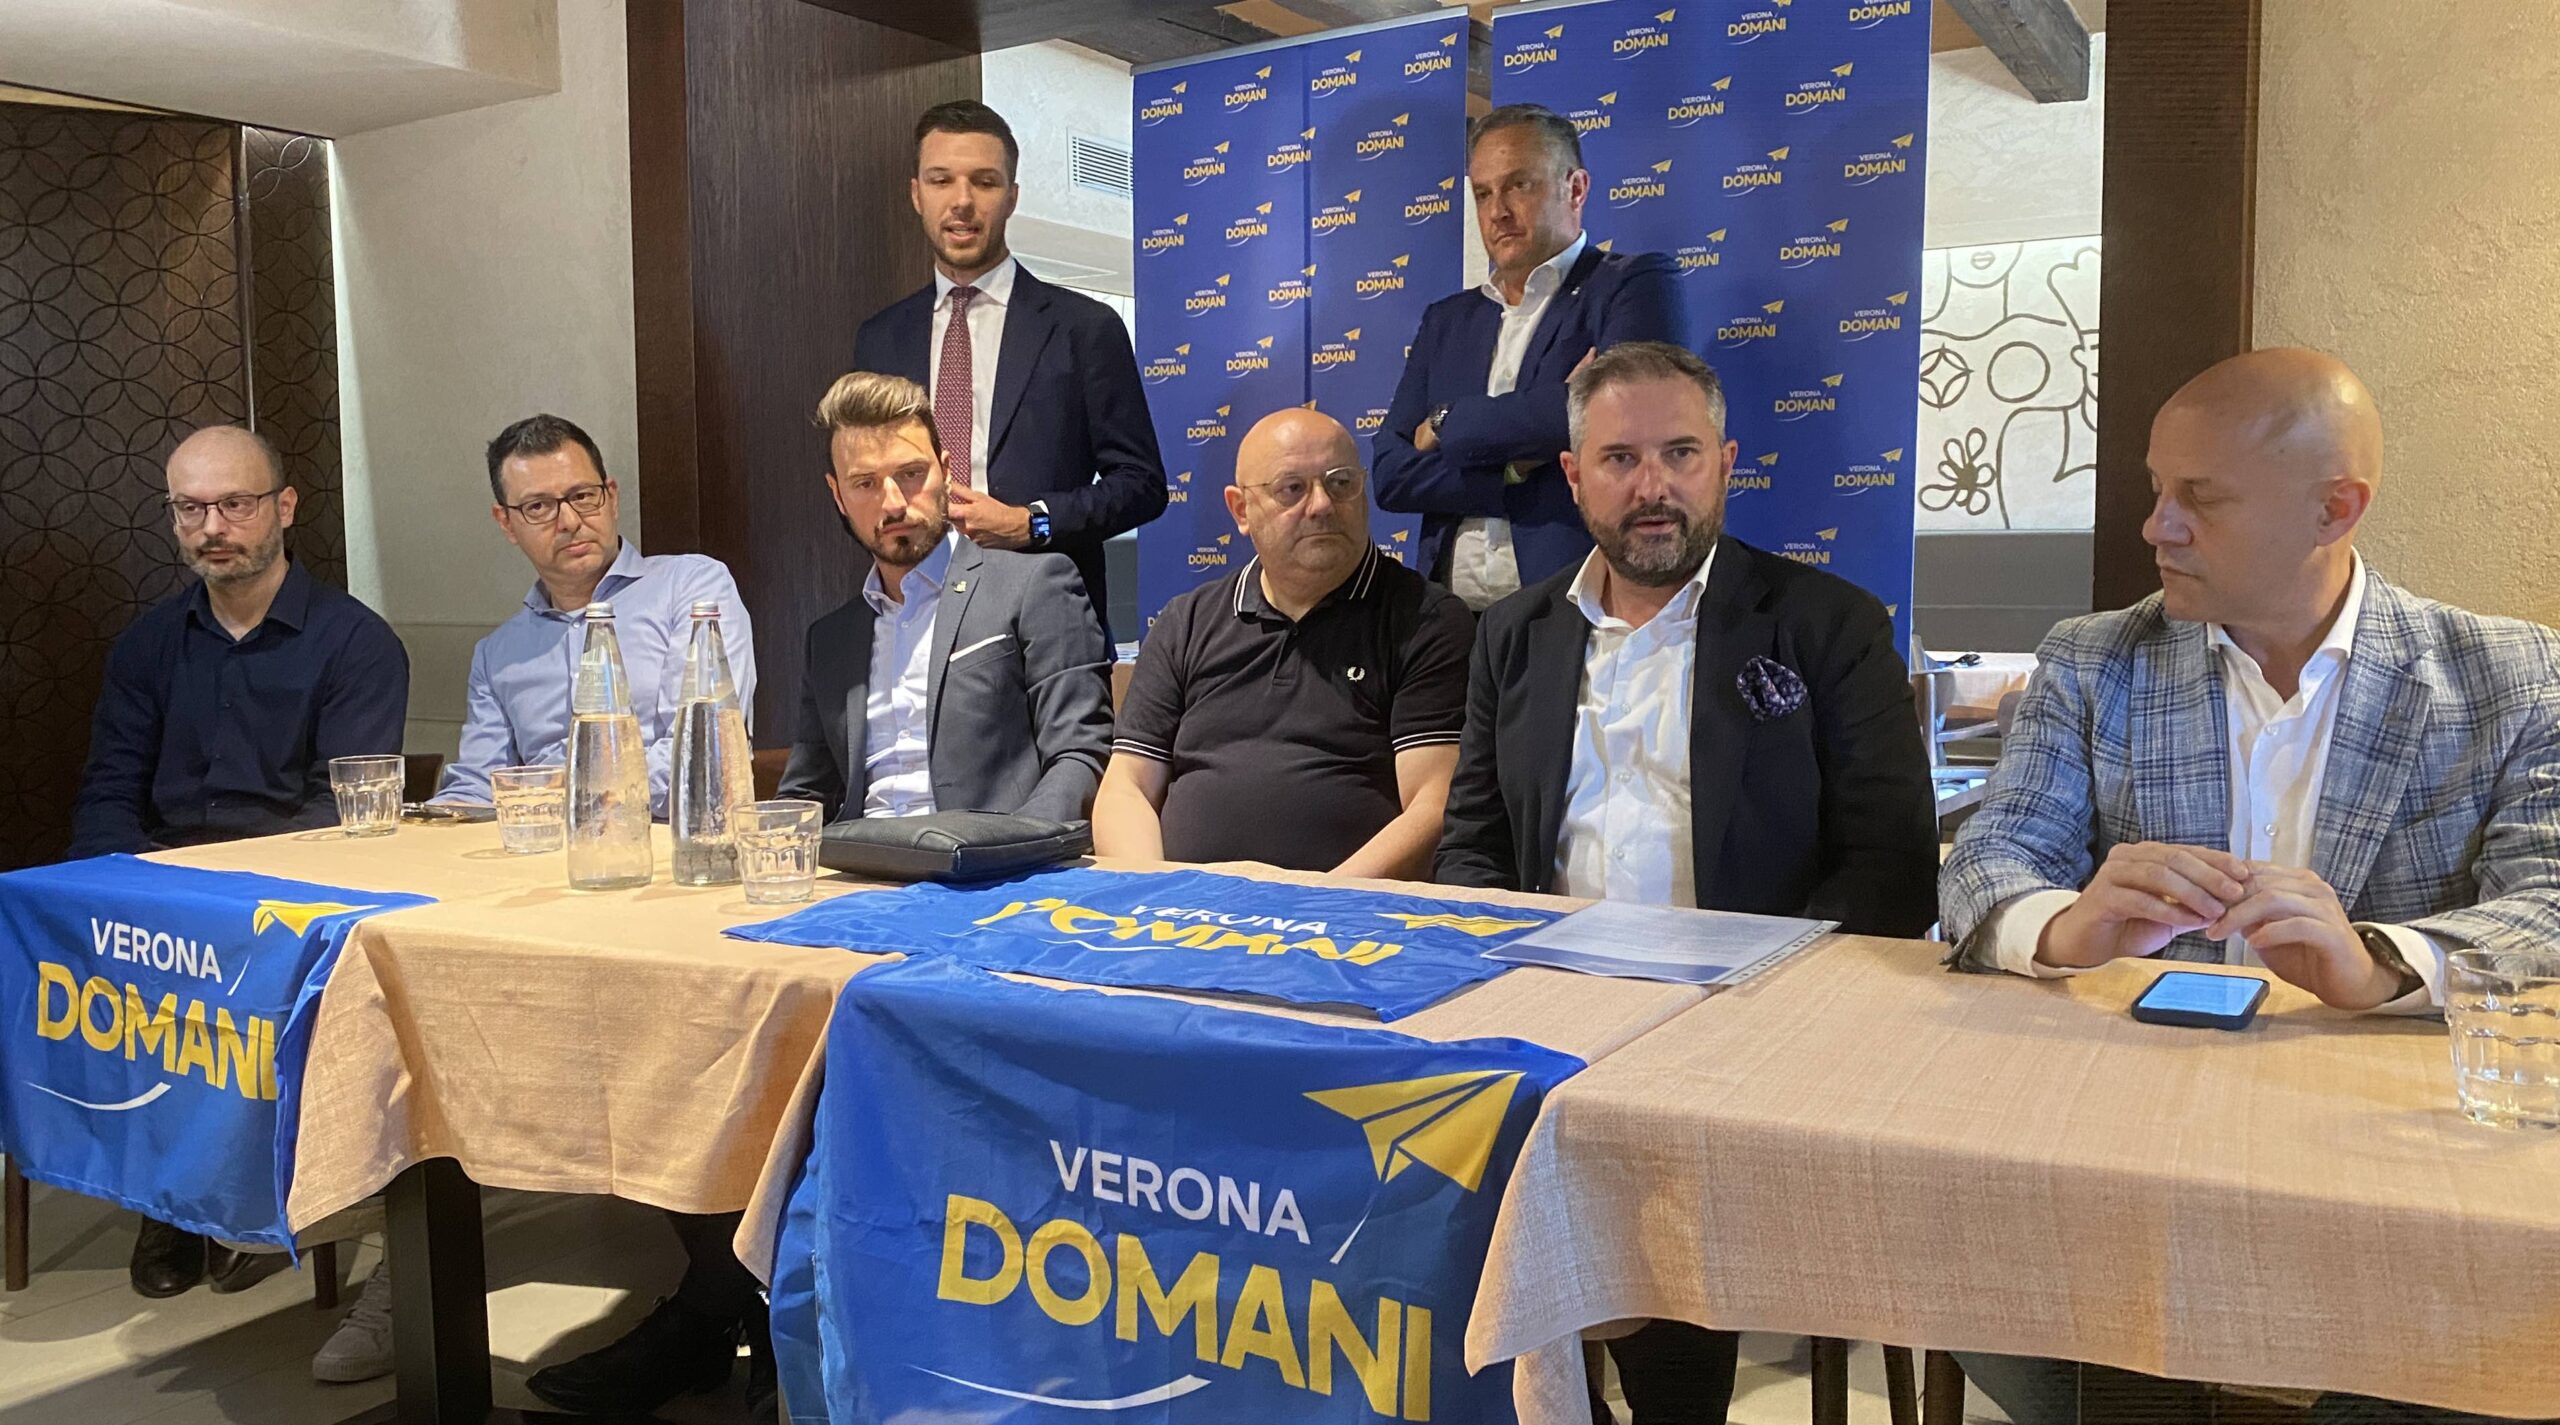 Verona Domani presenta la nuova organizzazione. Gasparato: siamo un partito provinciale